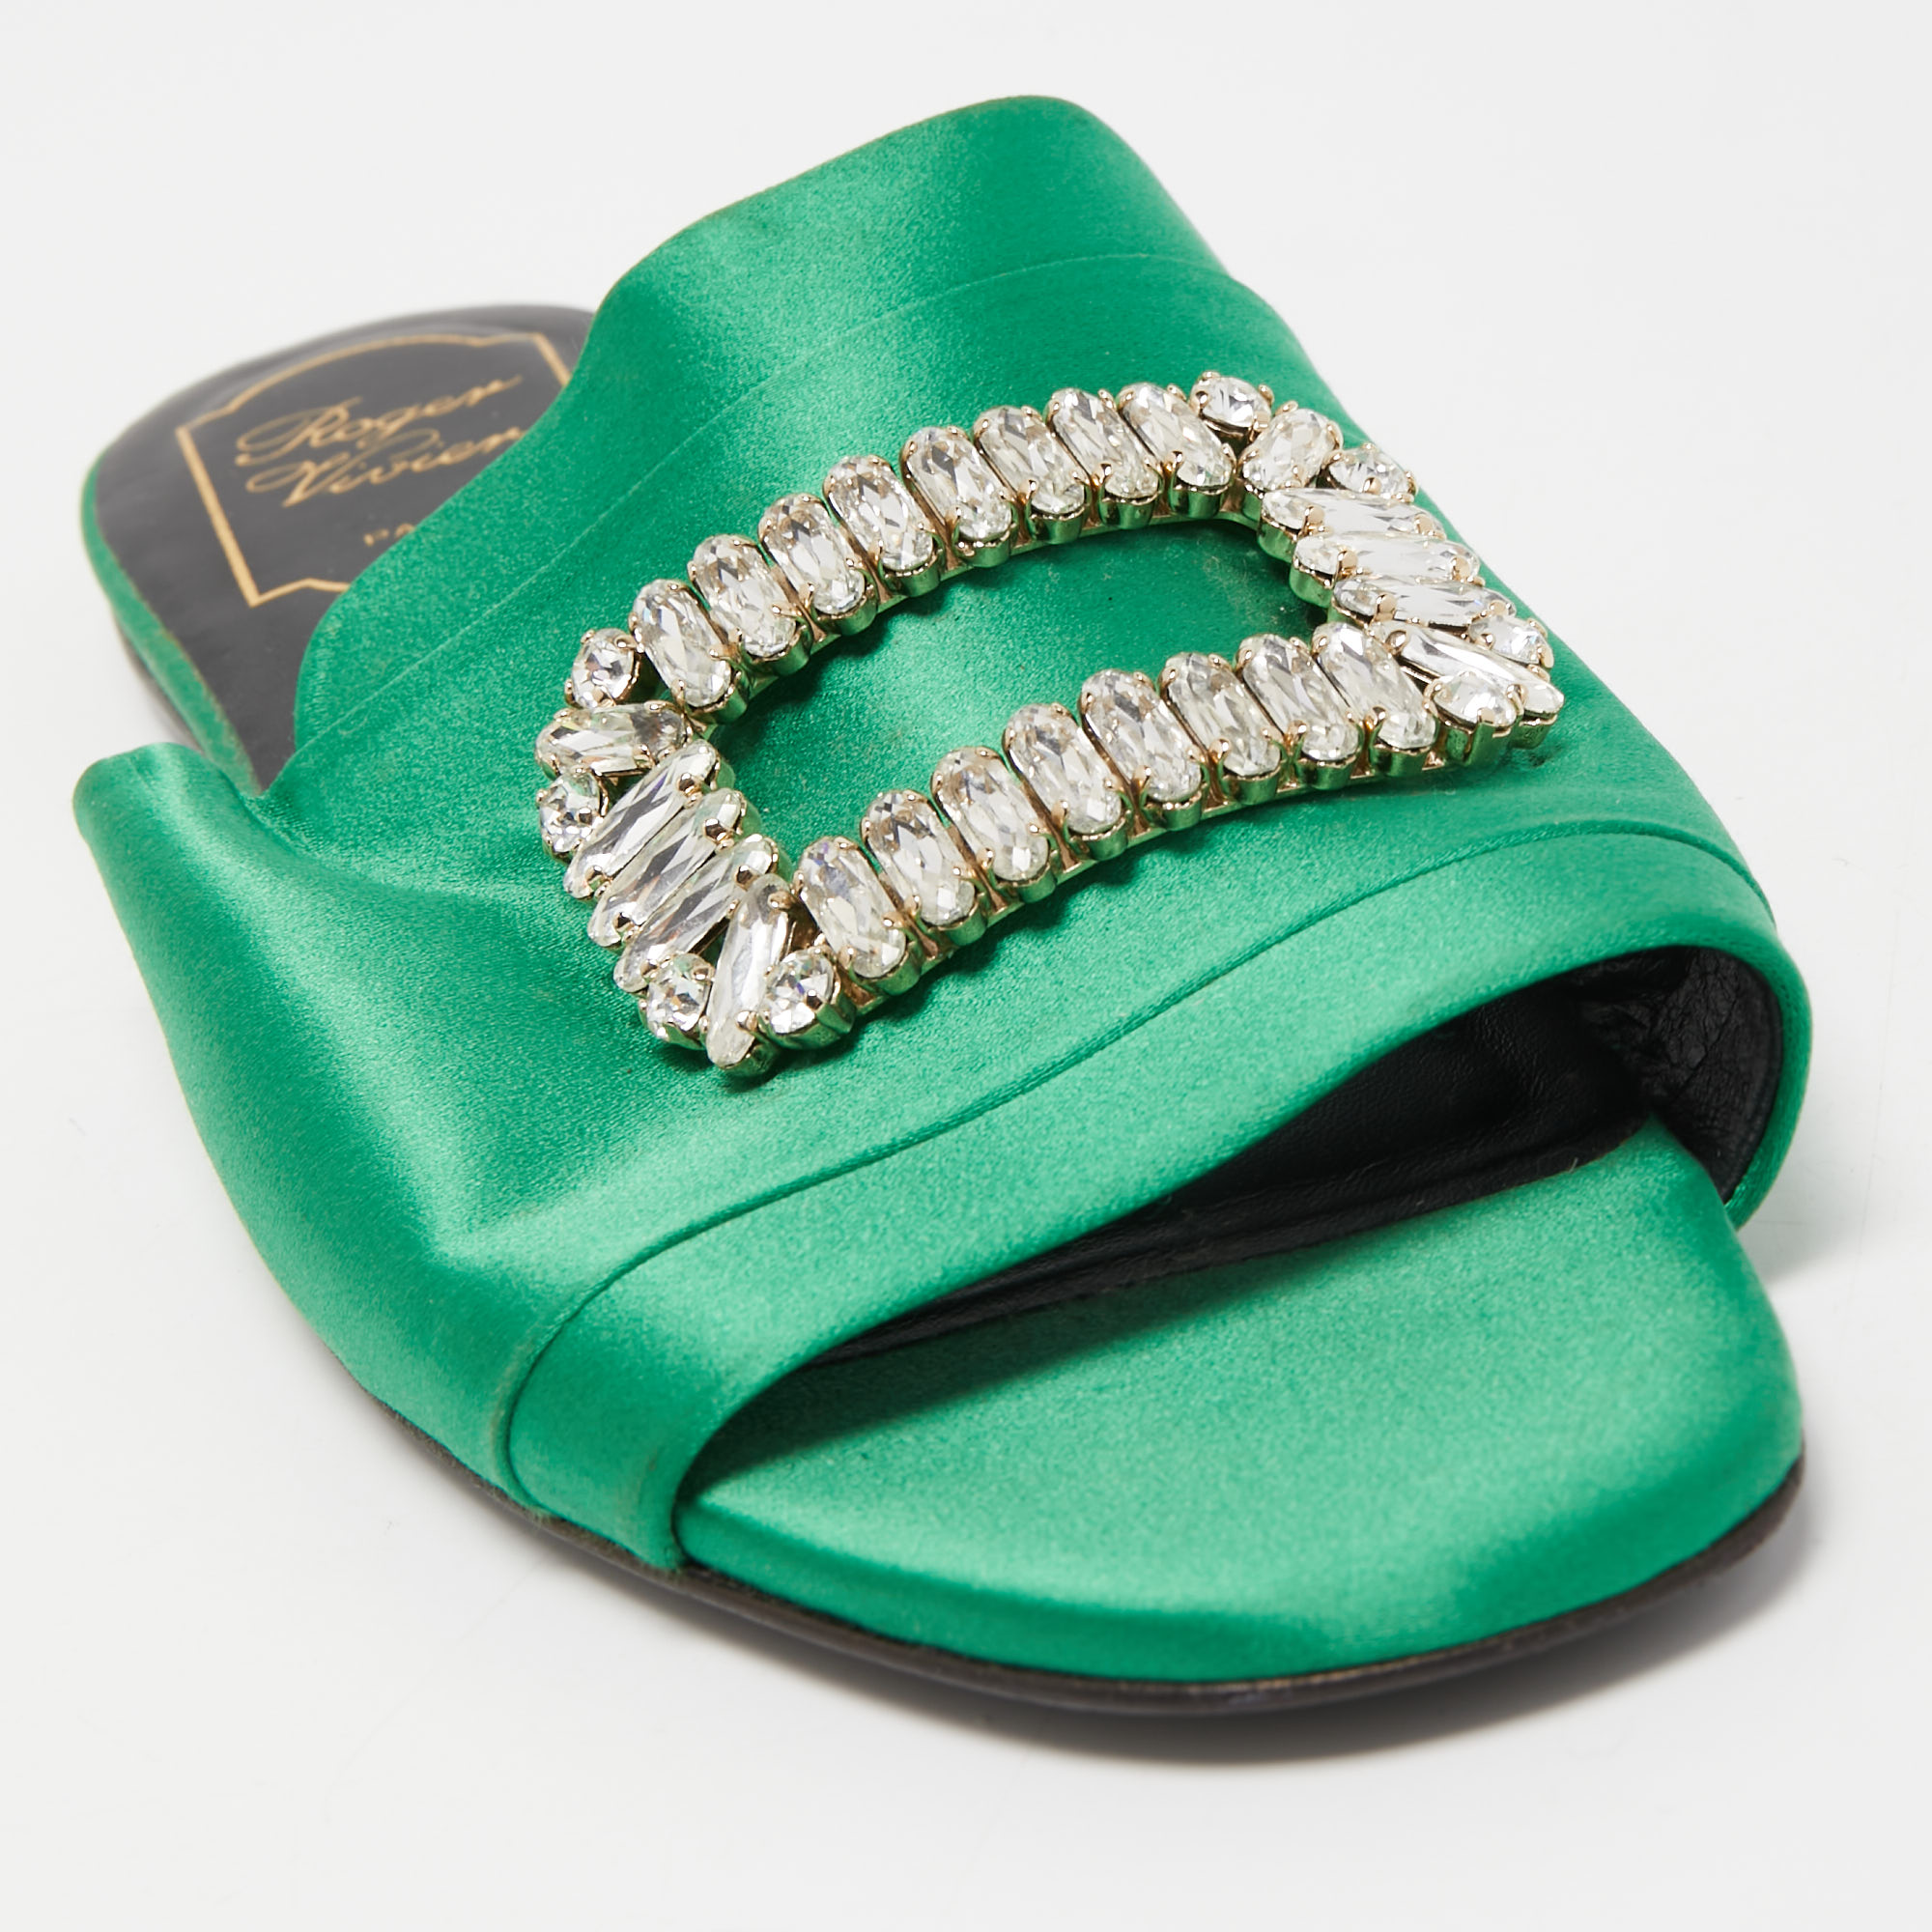 Roger Vivier Green Satin Crystal Embellished Flat Sandals Size 38.5